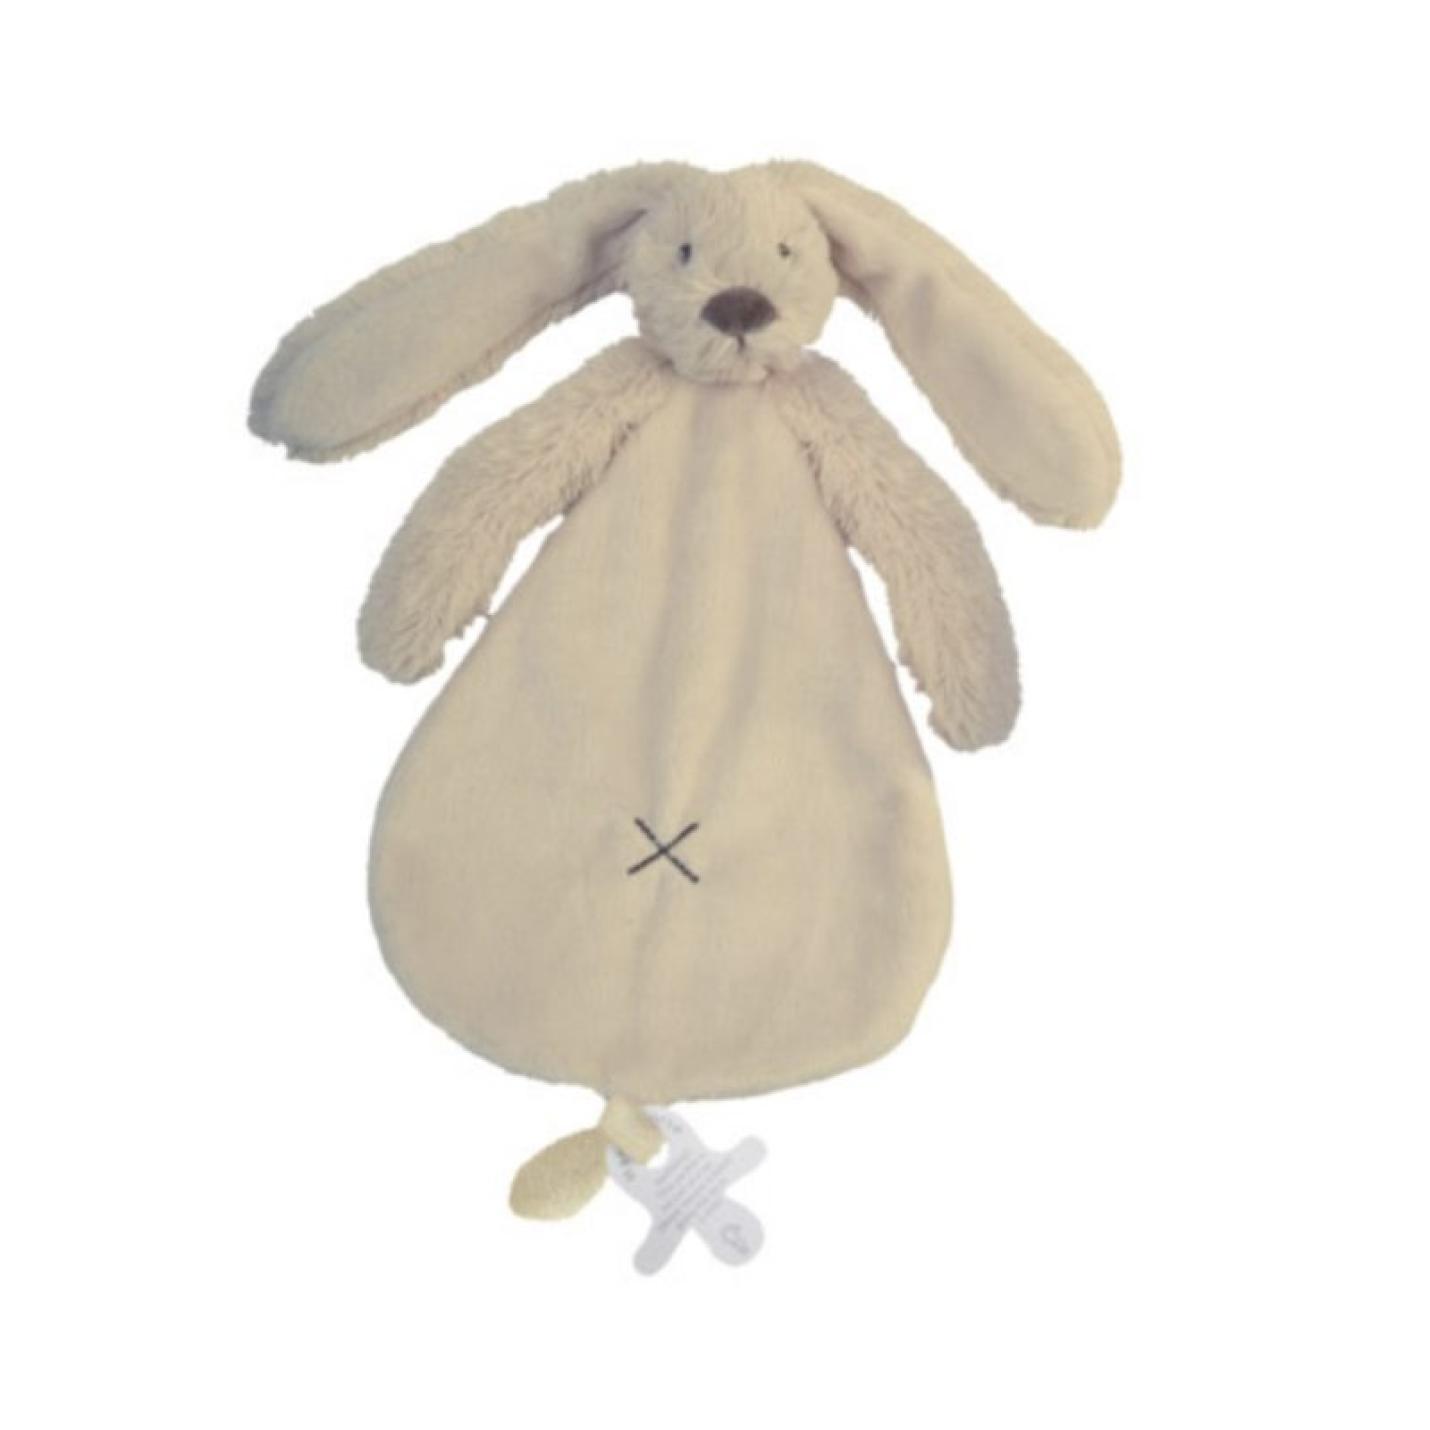 Knuffeldoekje Rabbit Richie Beige is een stoffenf plat goed doekje in vorm van peer met konijnkopje erbovenop lange oren en armpjes onder het hoofdje met onderaan lus voor speen